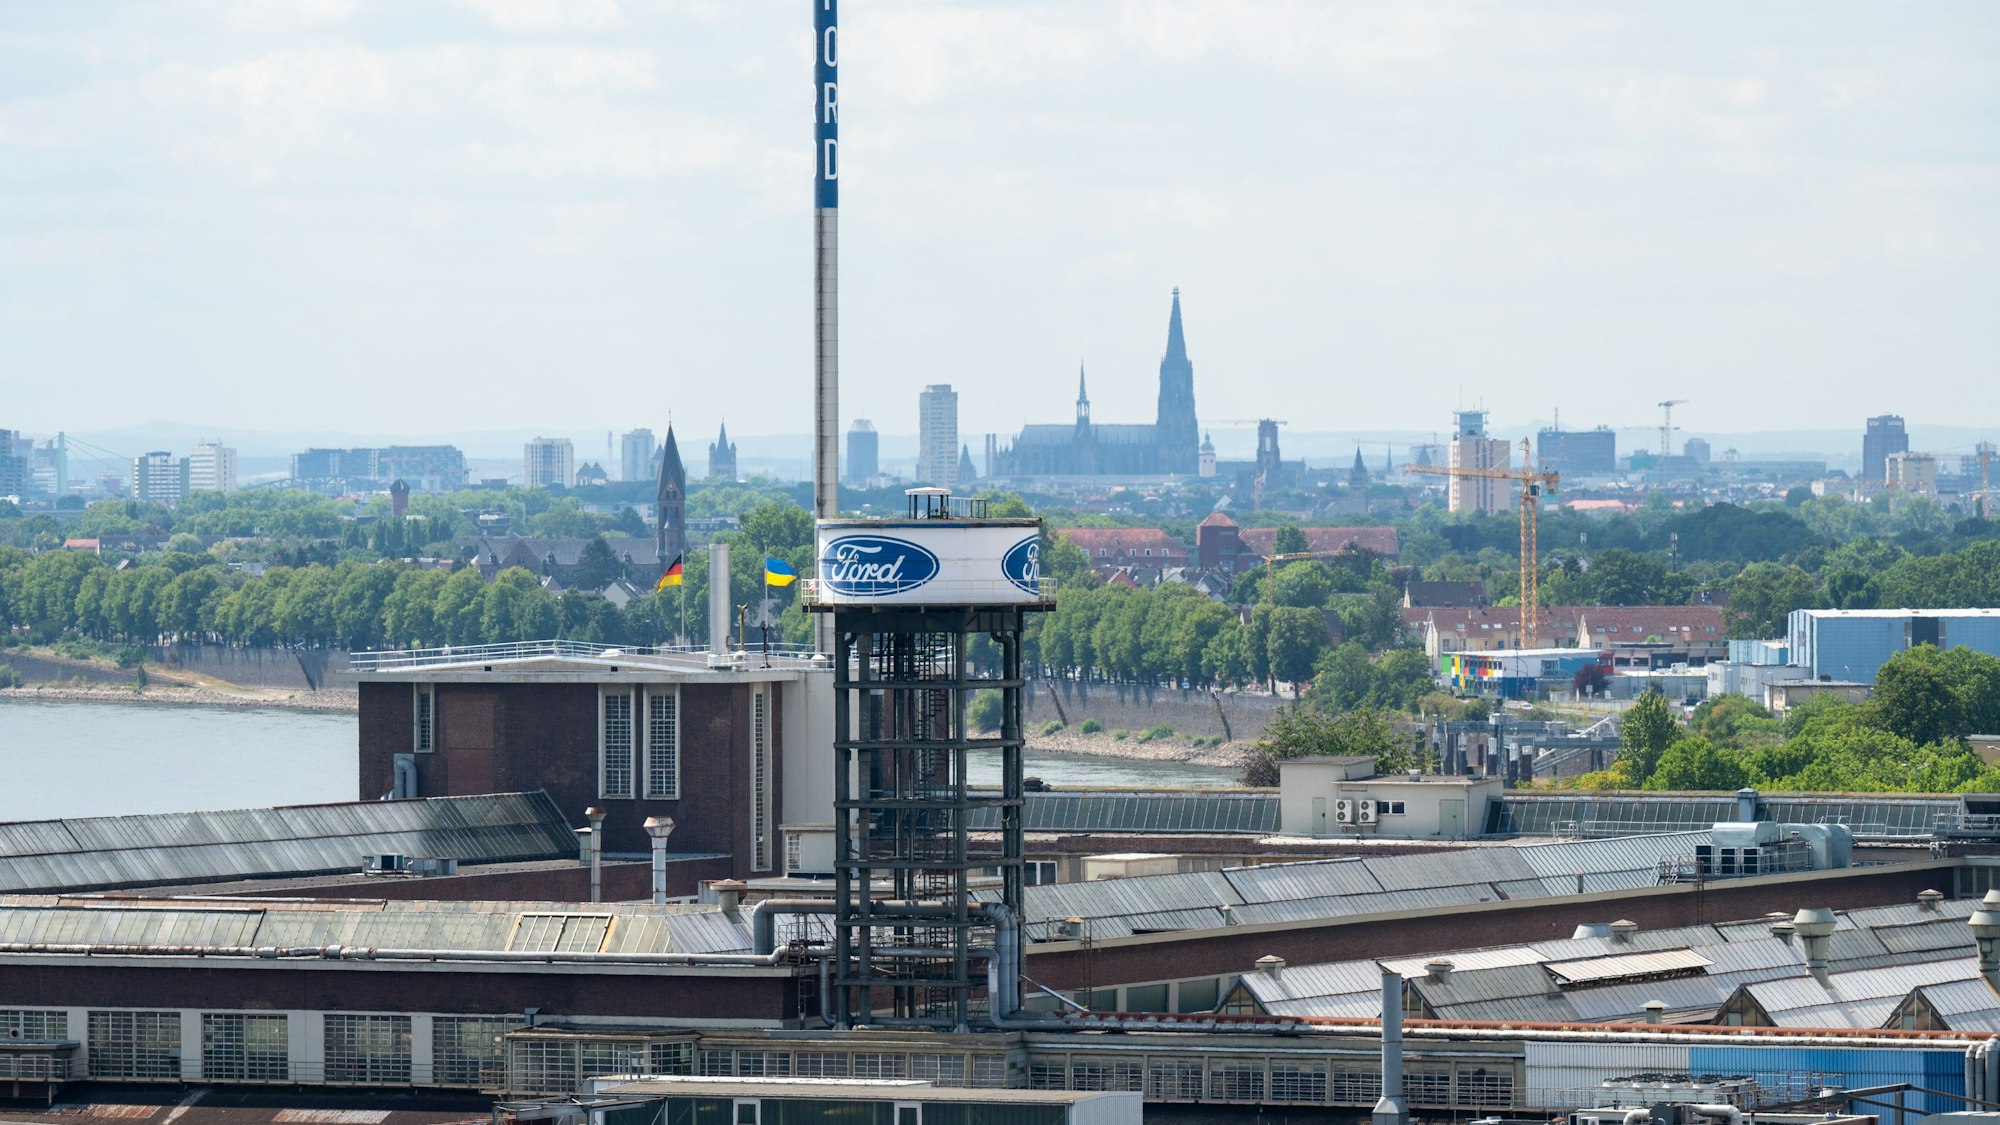 Das Bild zeigt das Werksgelände von Ford, im Hintergrund ist die Kölner Skyline zu sehen.